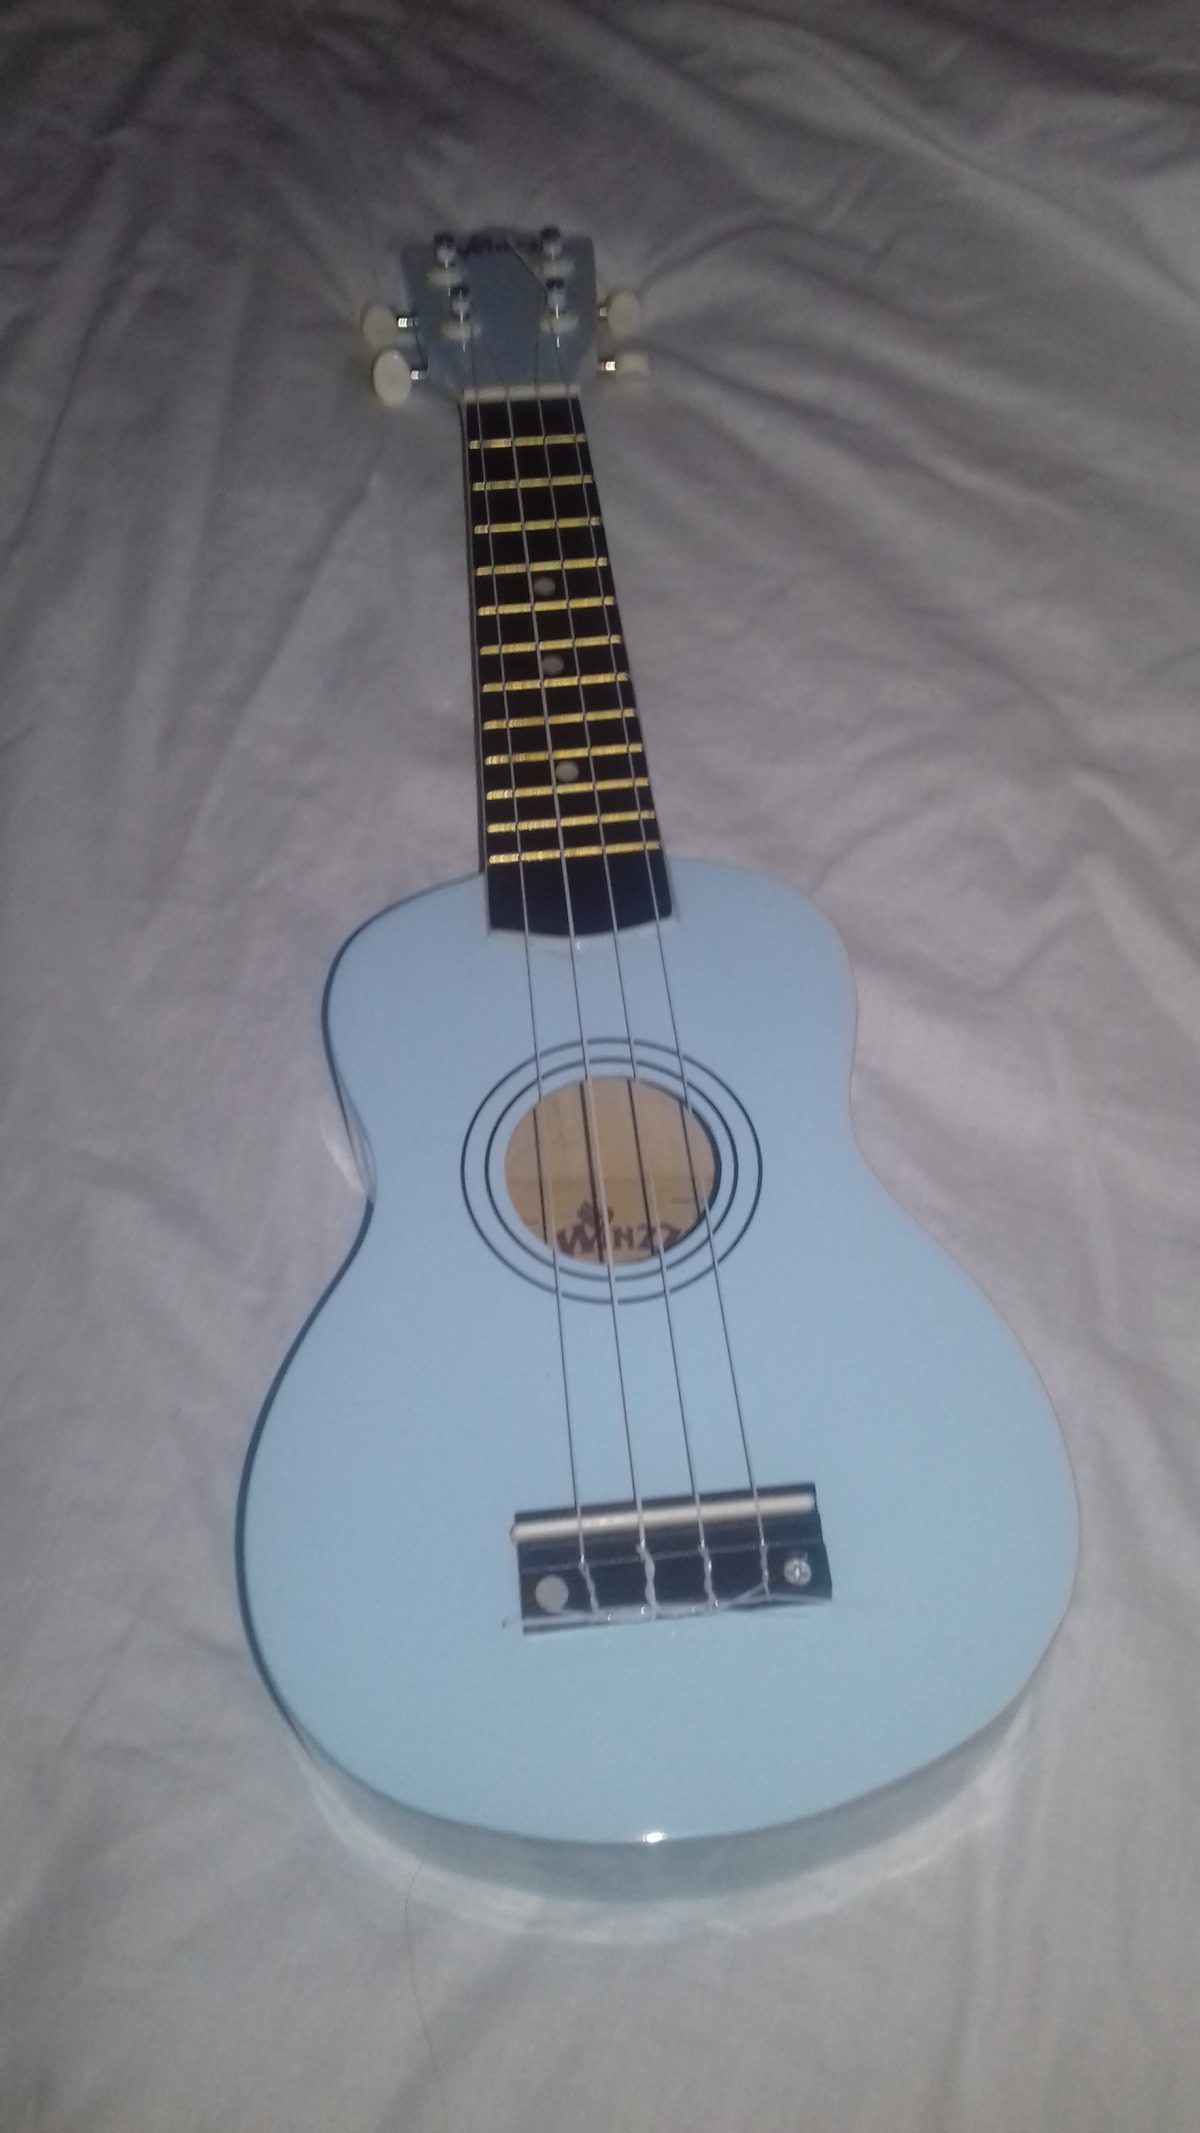 Amateur ukulele song written on blue Bessie the ukulele